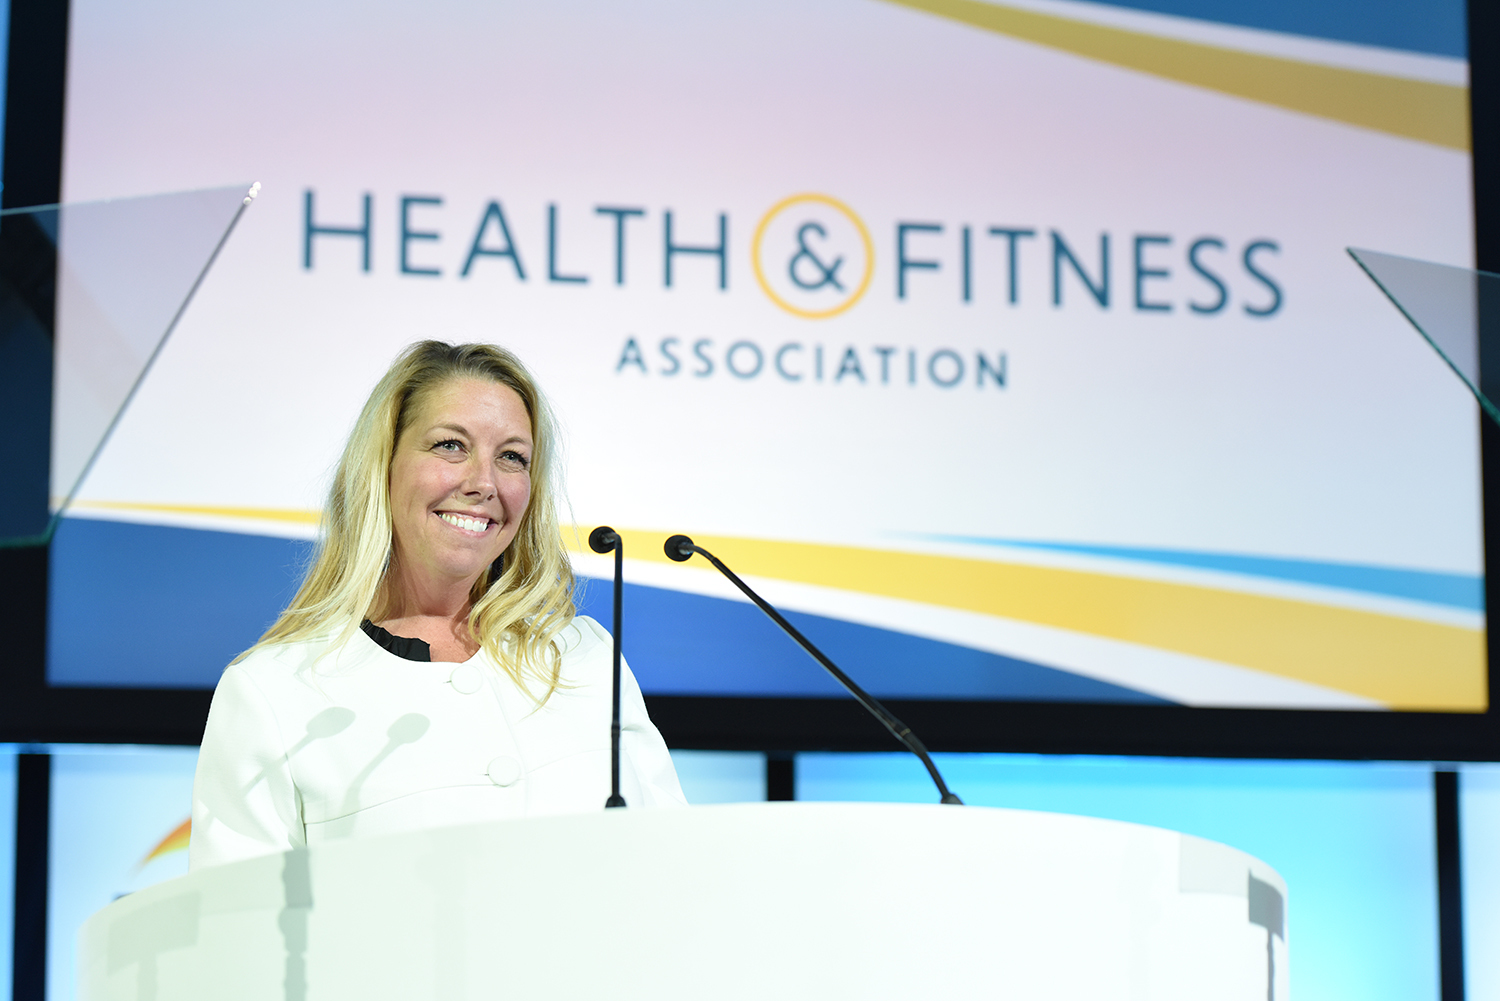 Liz anuncia a reformulação da marca Health and Fitness